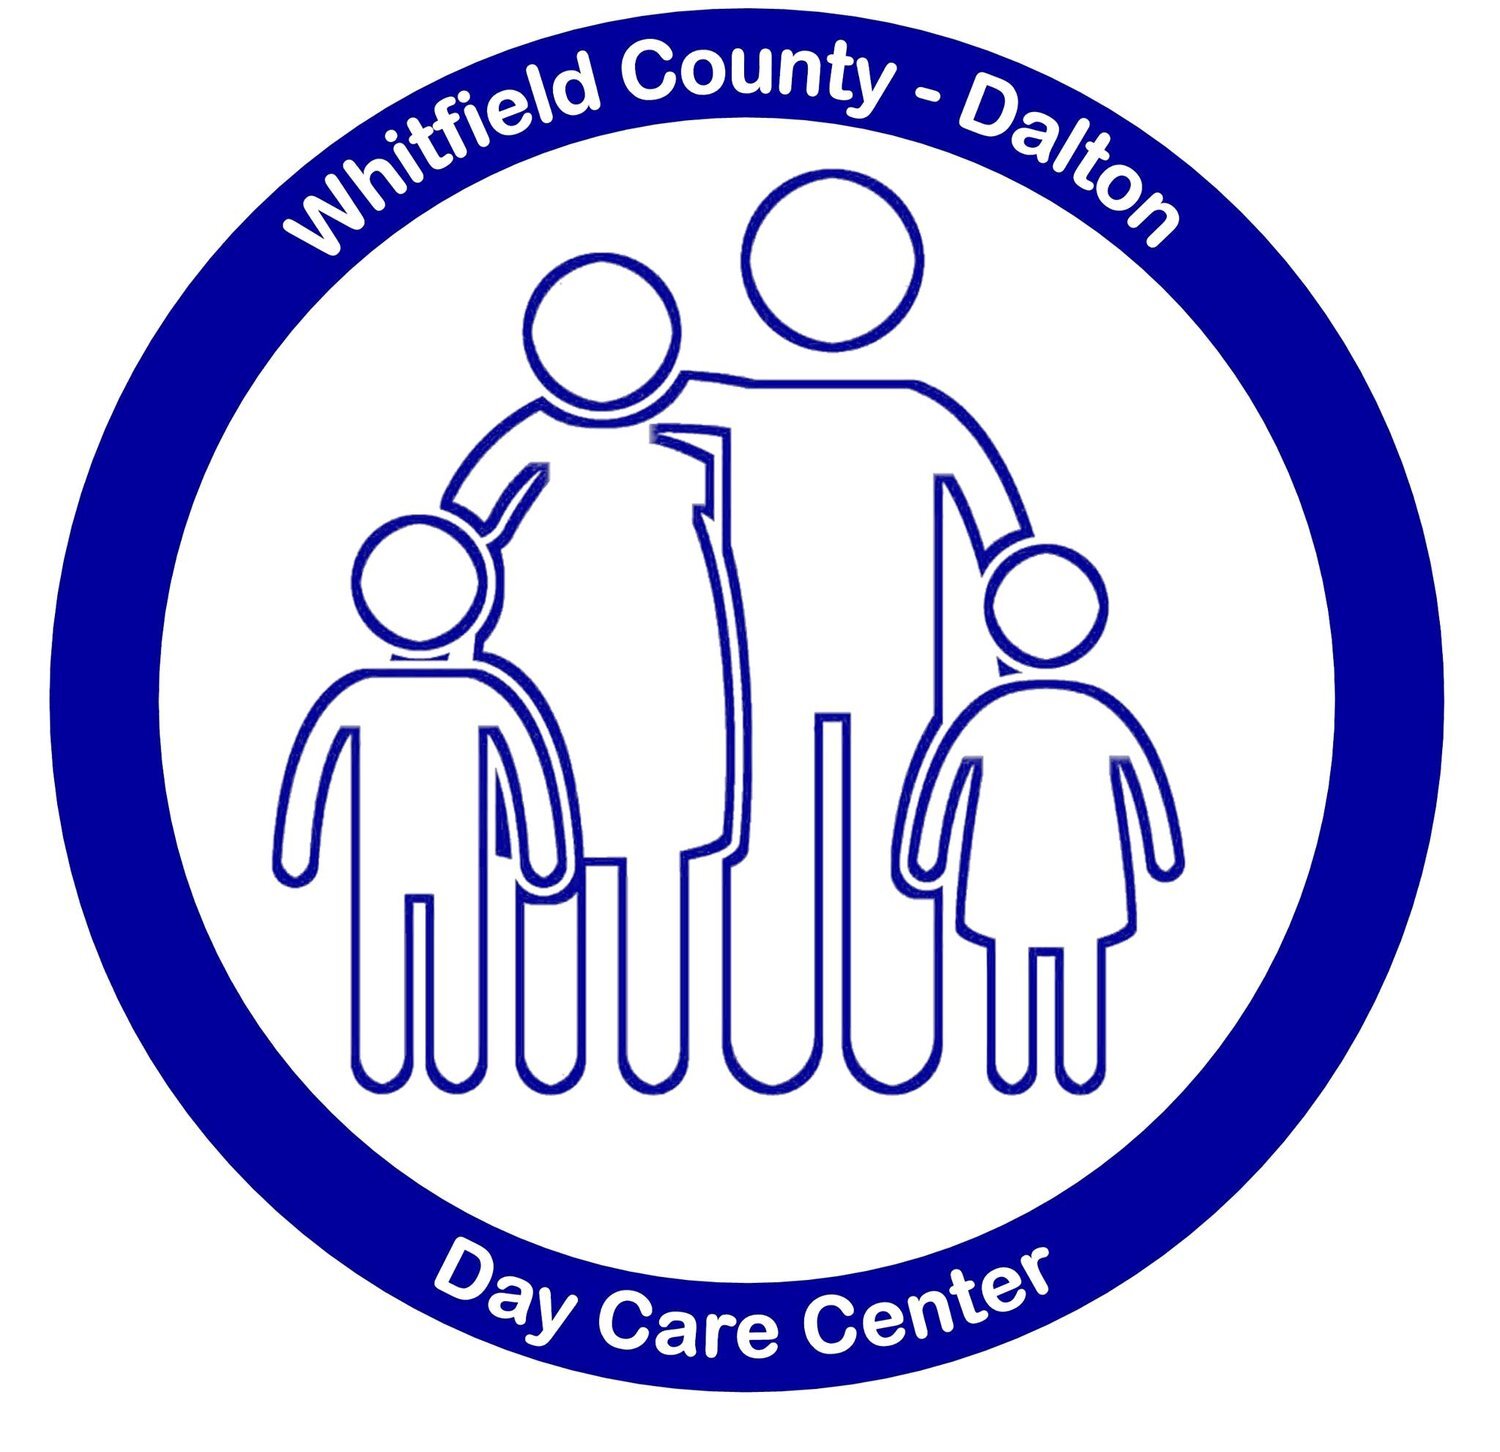 Whitfield County-Dalton Day Care Center